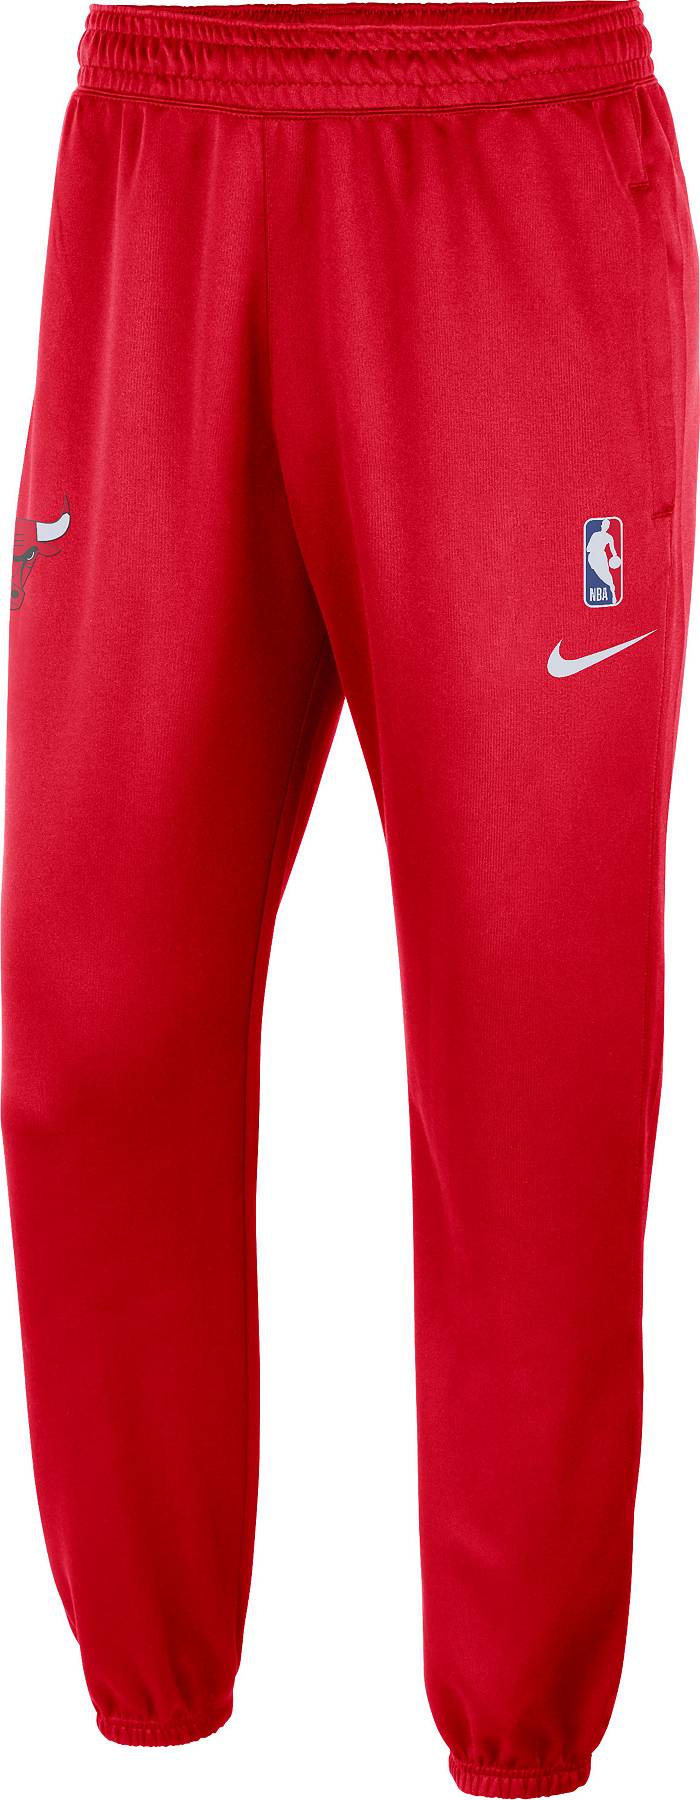 Nike Chicago Bulls Showtime Men's Nike Dri-FIT NBA Pants Black/Red